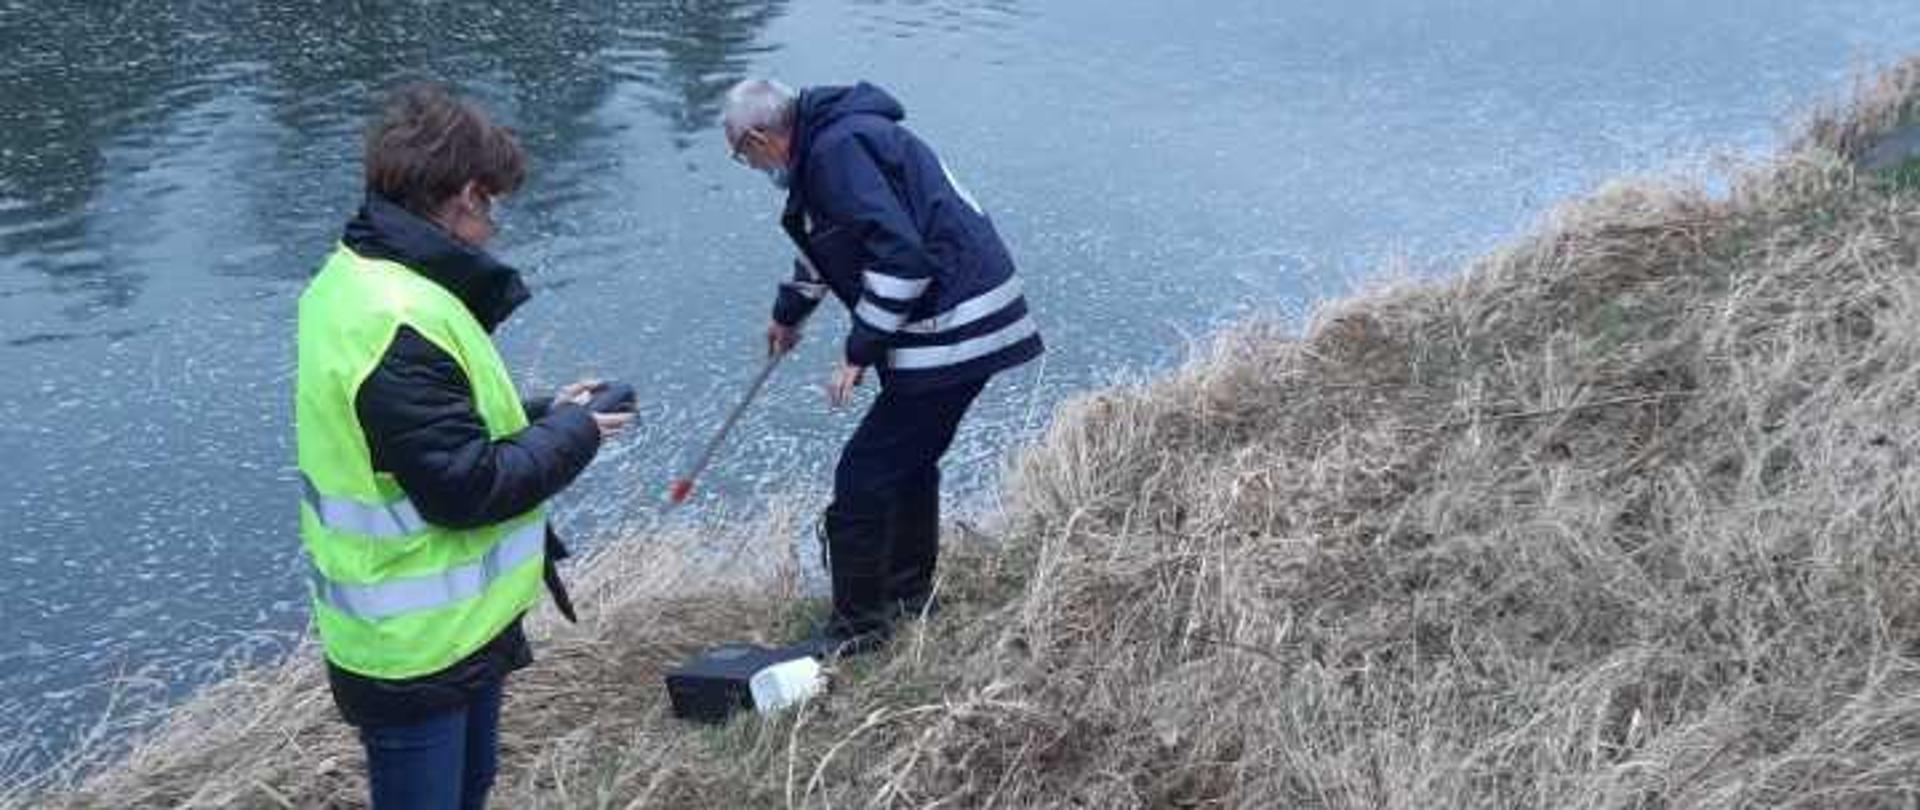 Inspektorzy WIOS pobierający próbki wody z rzeki